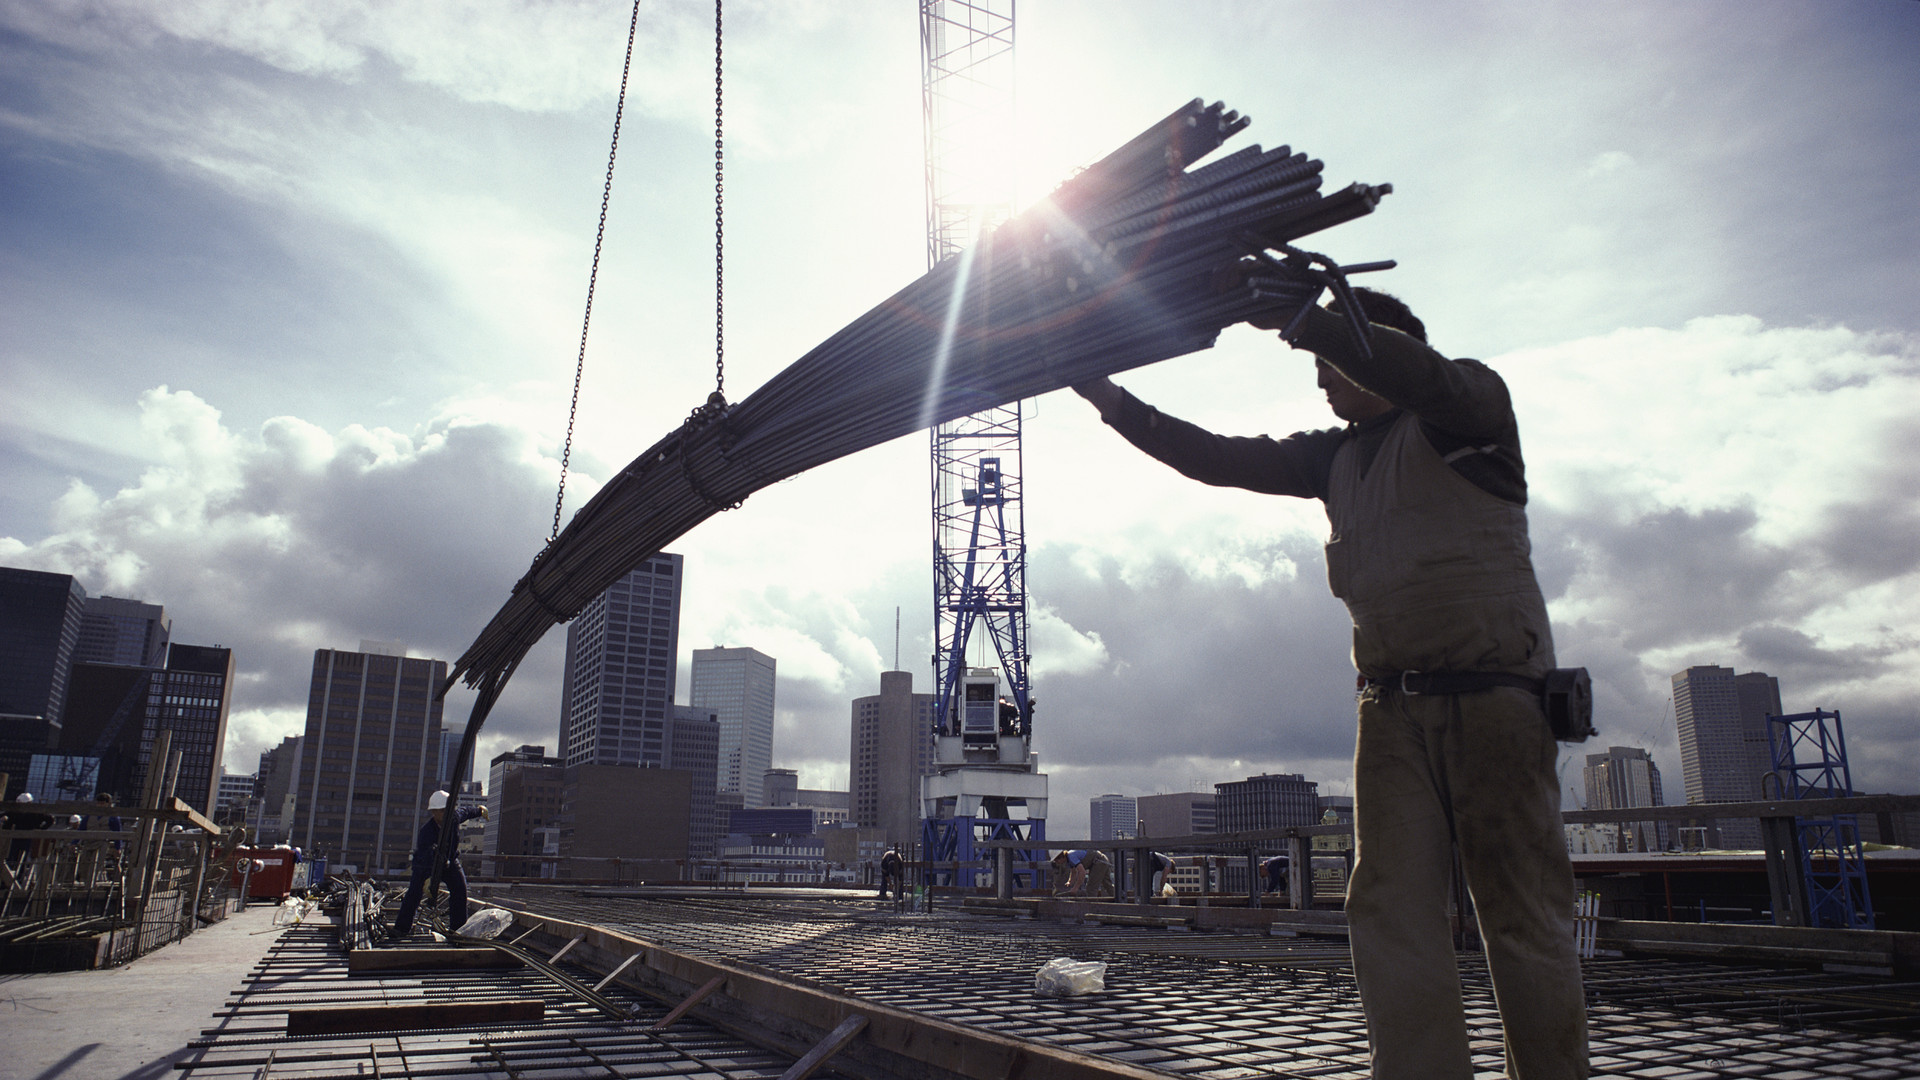 Crane Lowering Girders to Two Builders